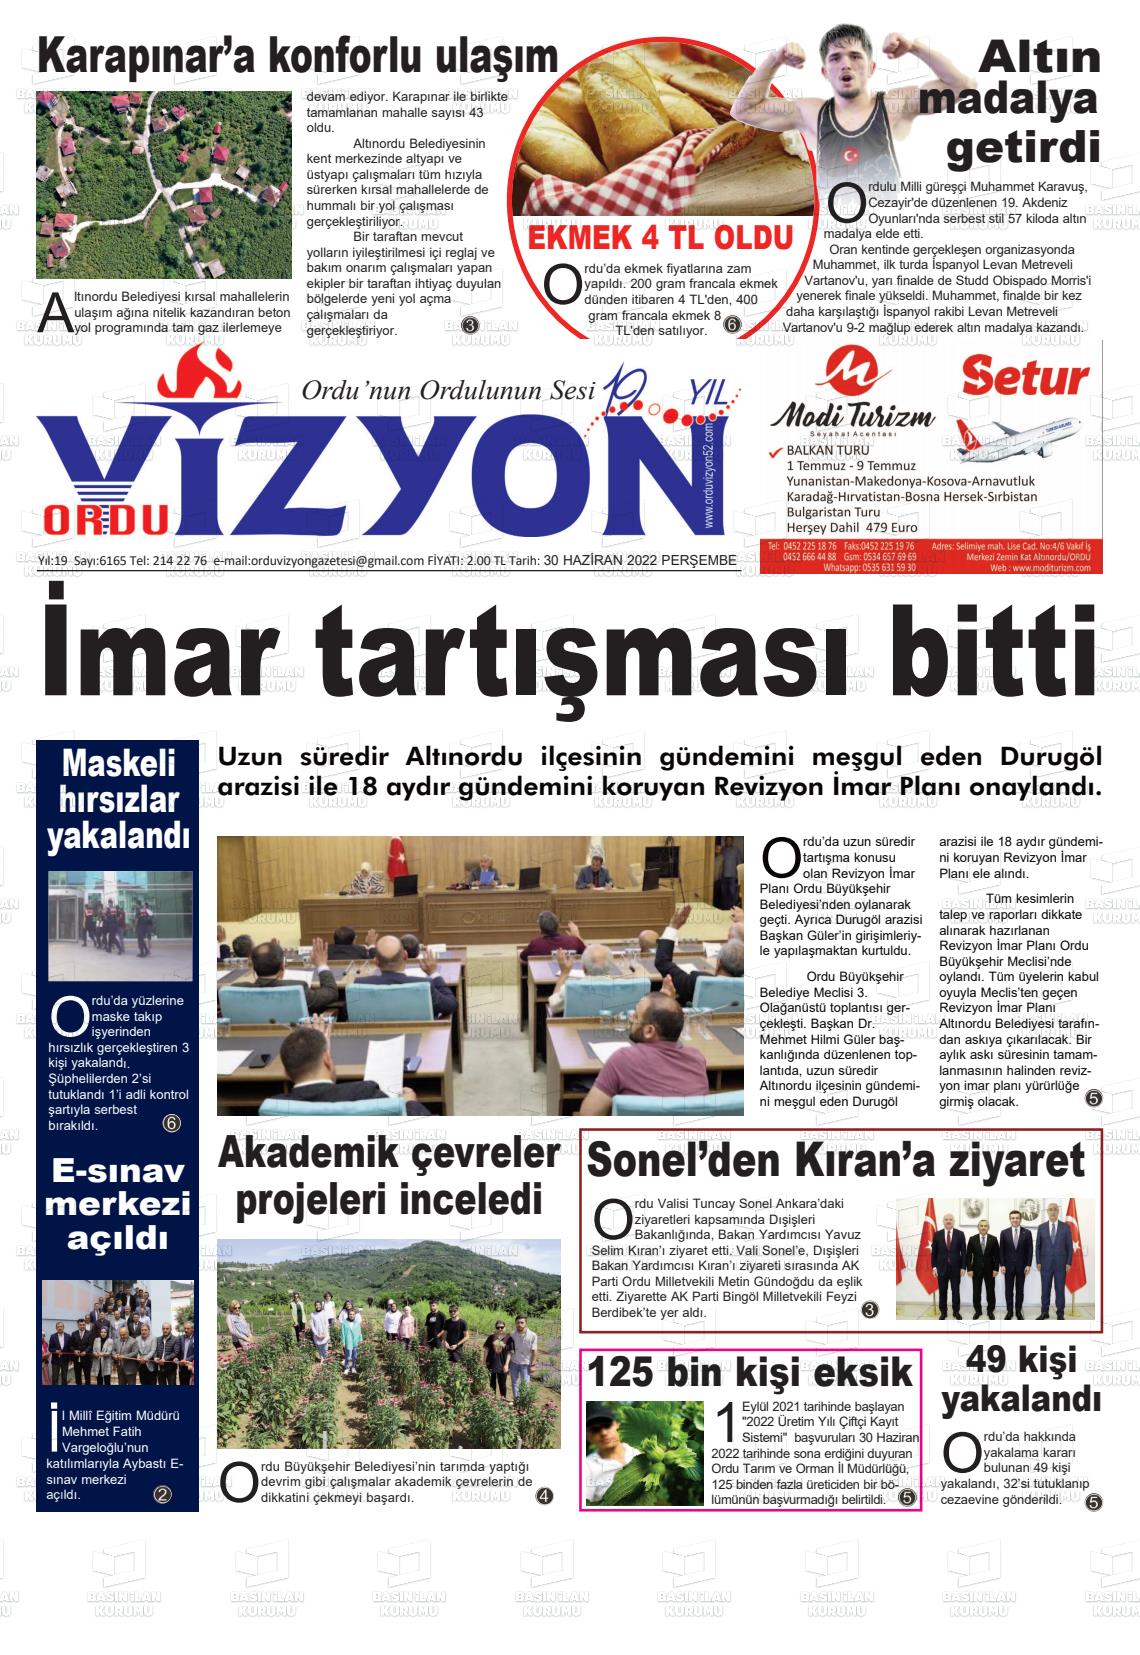 02 Temmuz 2022 Ordu Vizyon Gazete Manşeti